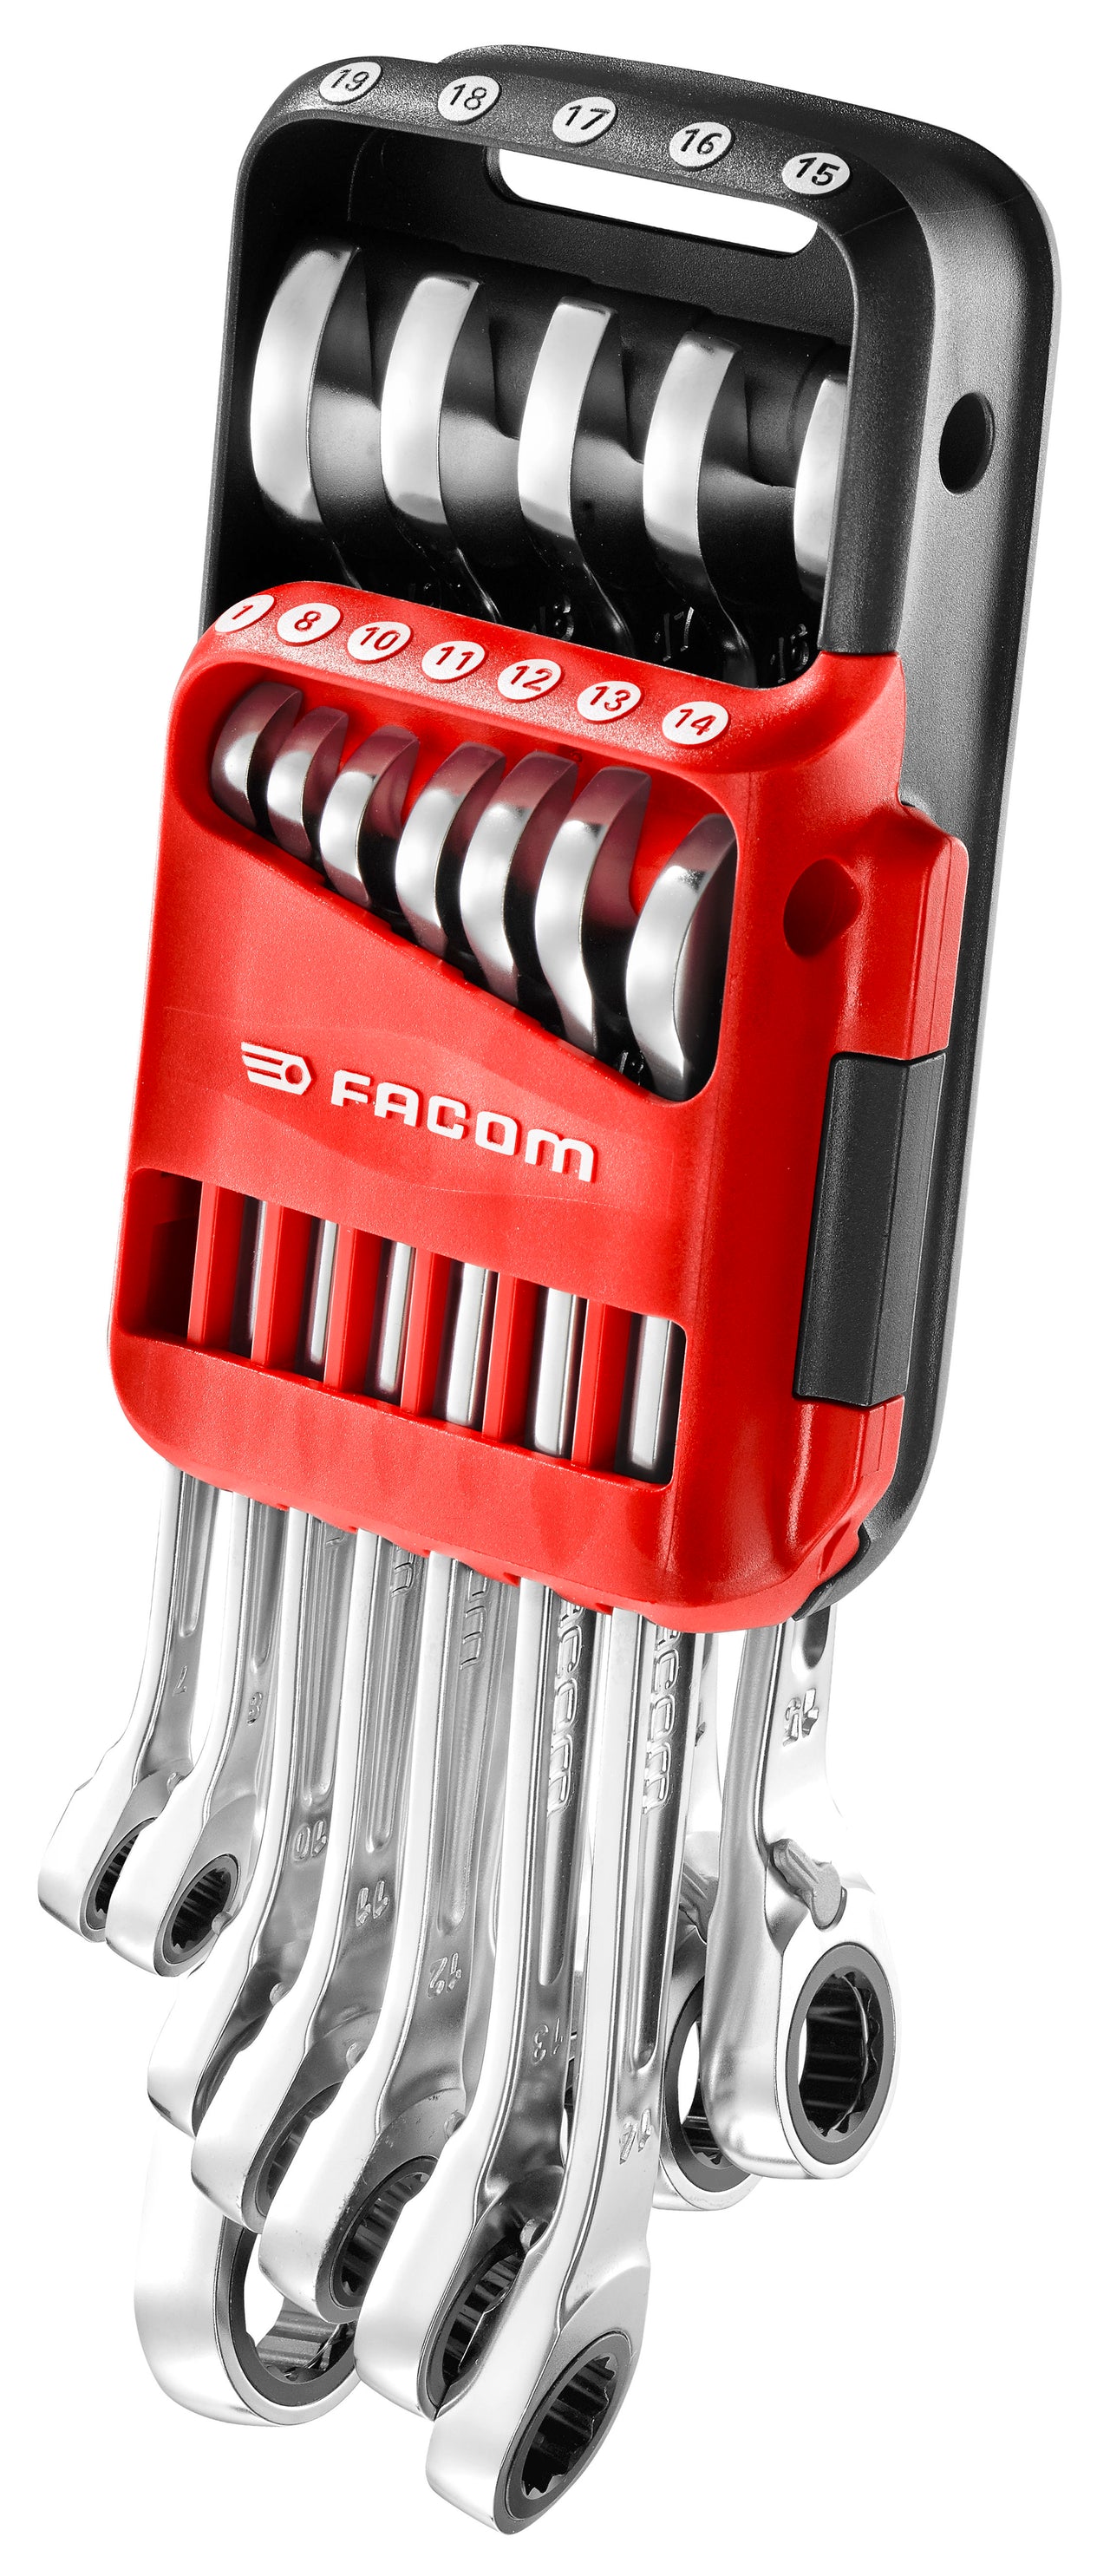 FACOM Pocket Set of 12 Spanners